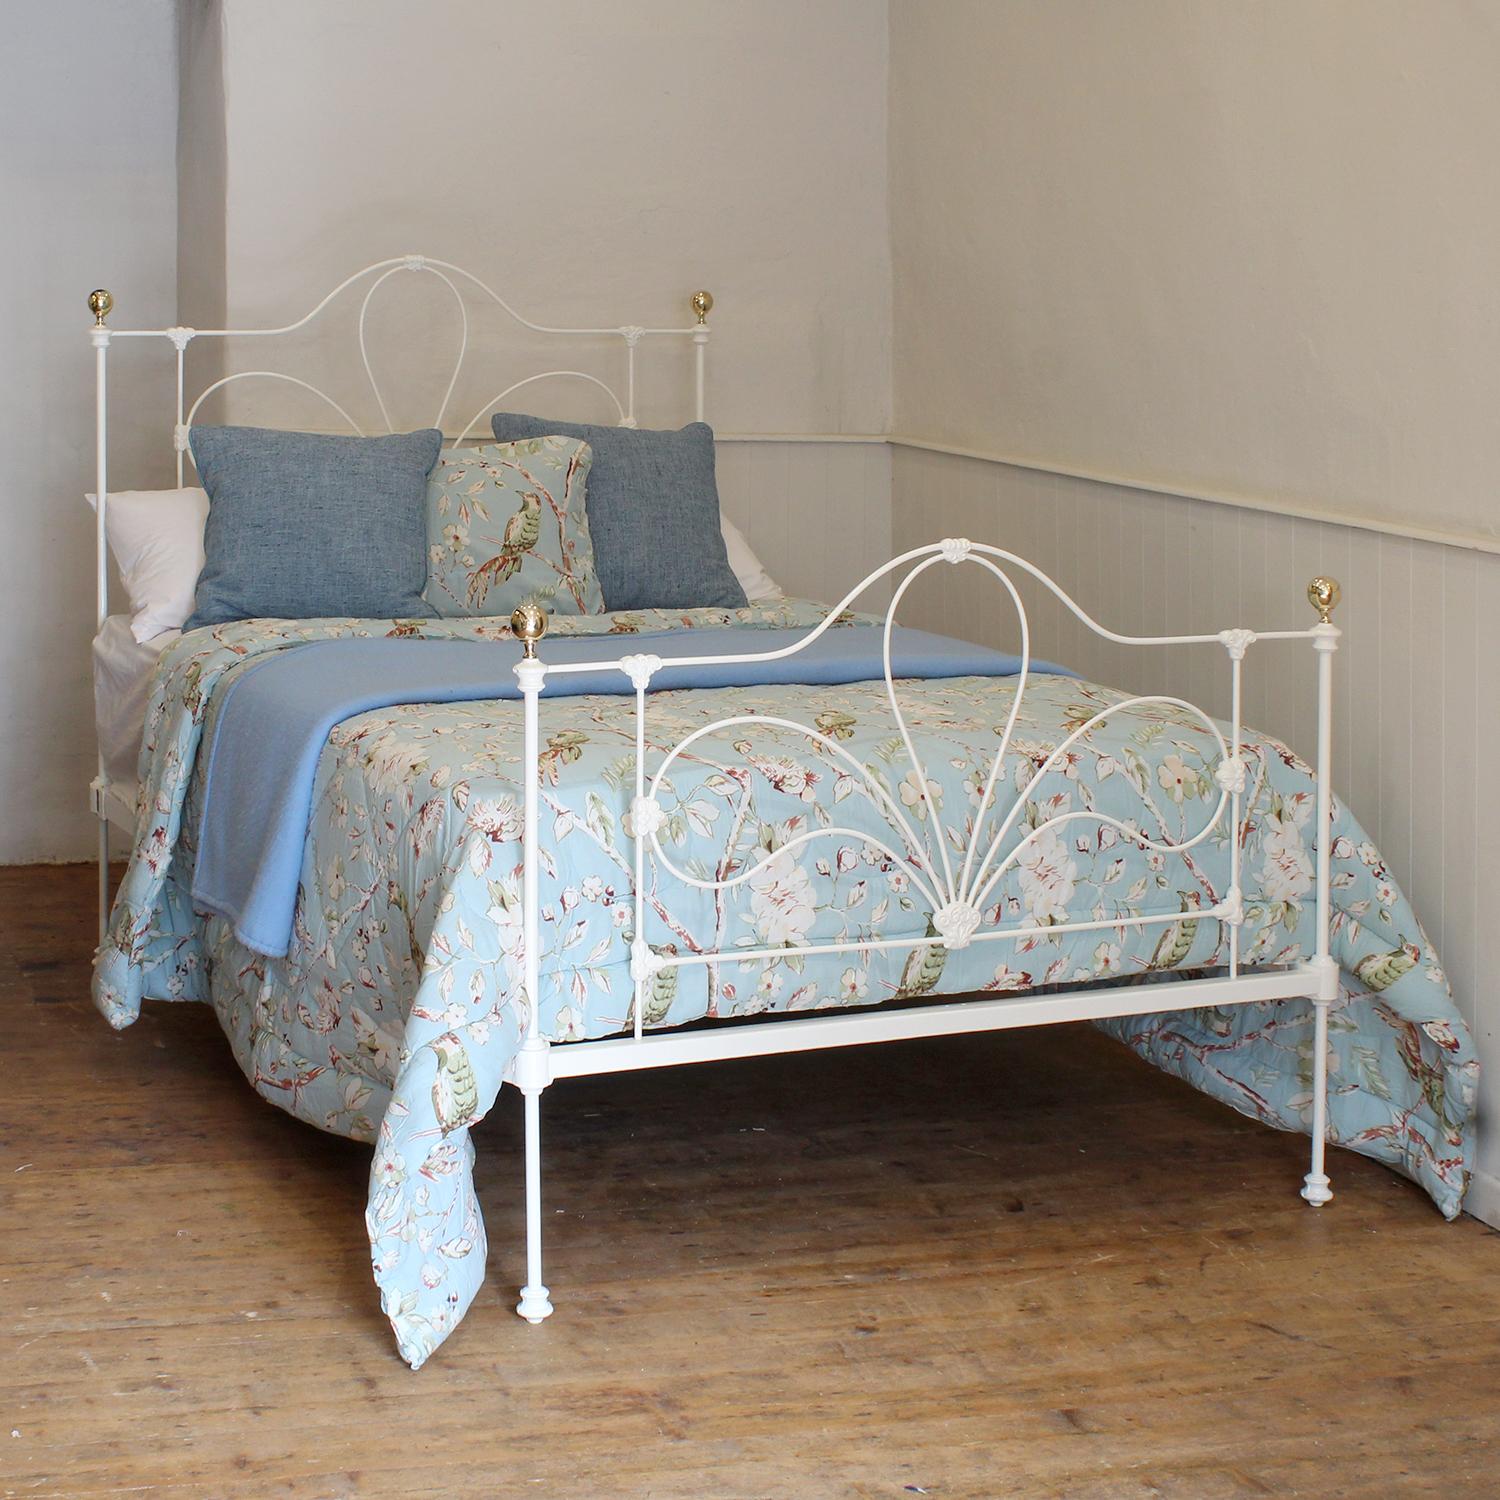 Ein viktorianisches Bettgestell aus Gusseisen in weißer Farbe mit geformten Paneelen und zierlichen, dekorativen Gussteilen.

Dieses Bett ist für ein Doppelbett mit einer Breite von 54 Zoll (135 cm) und einer Matratze geeignet. 

Im Preis